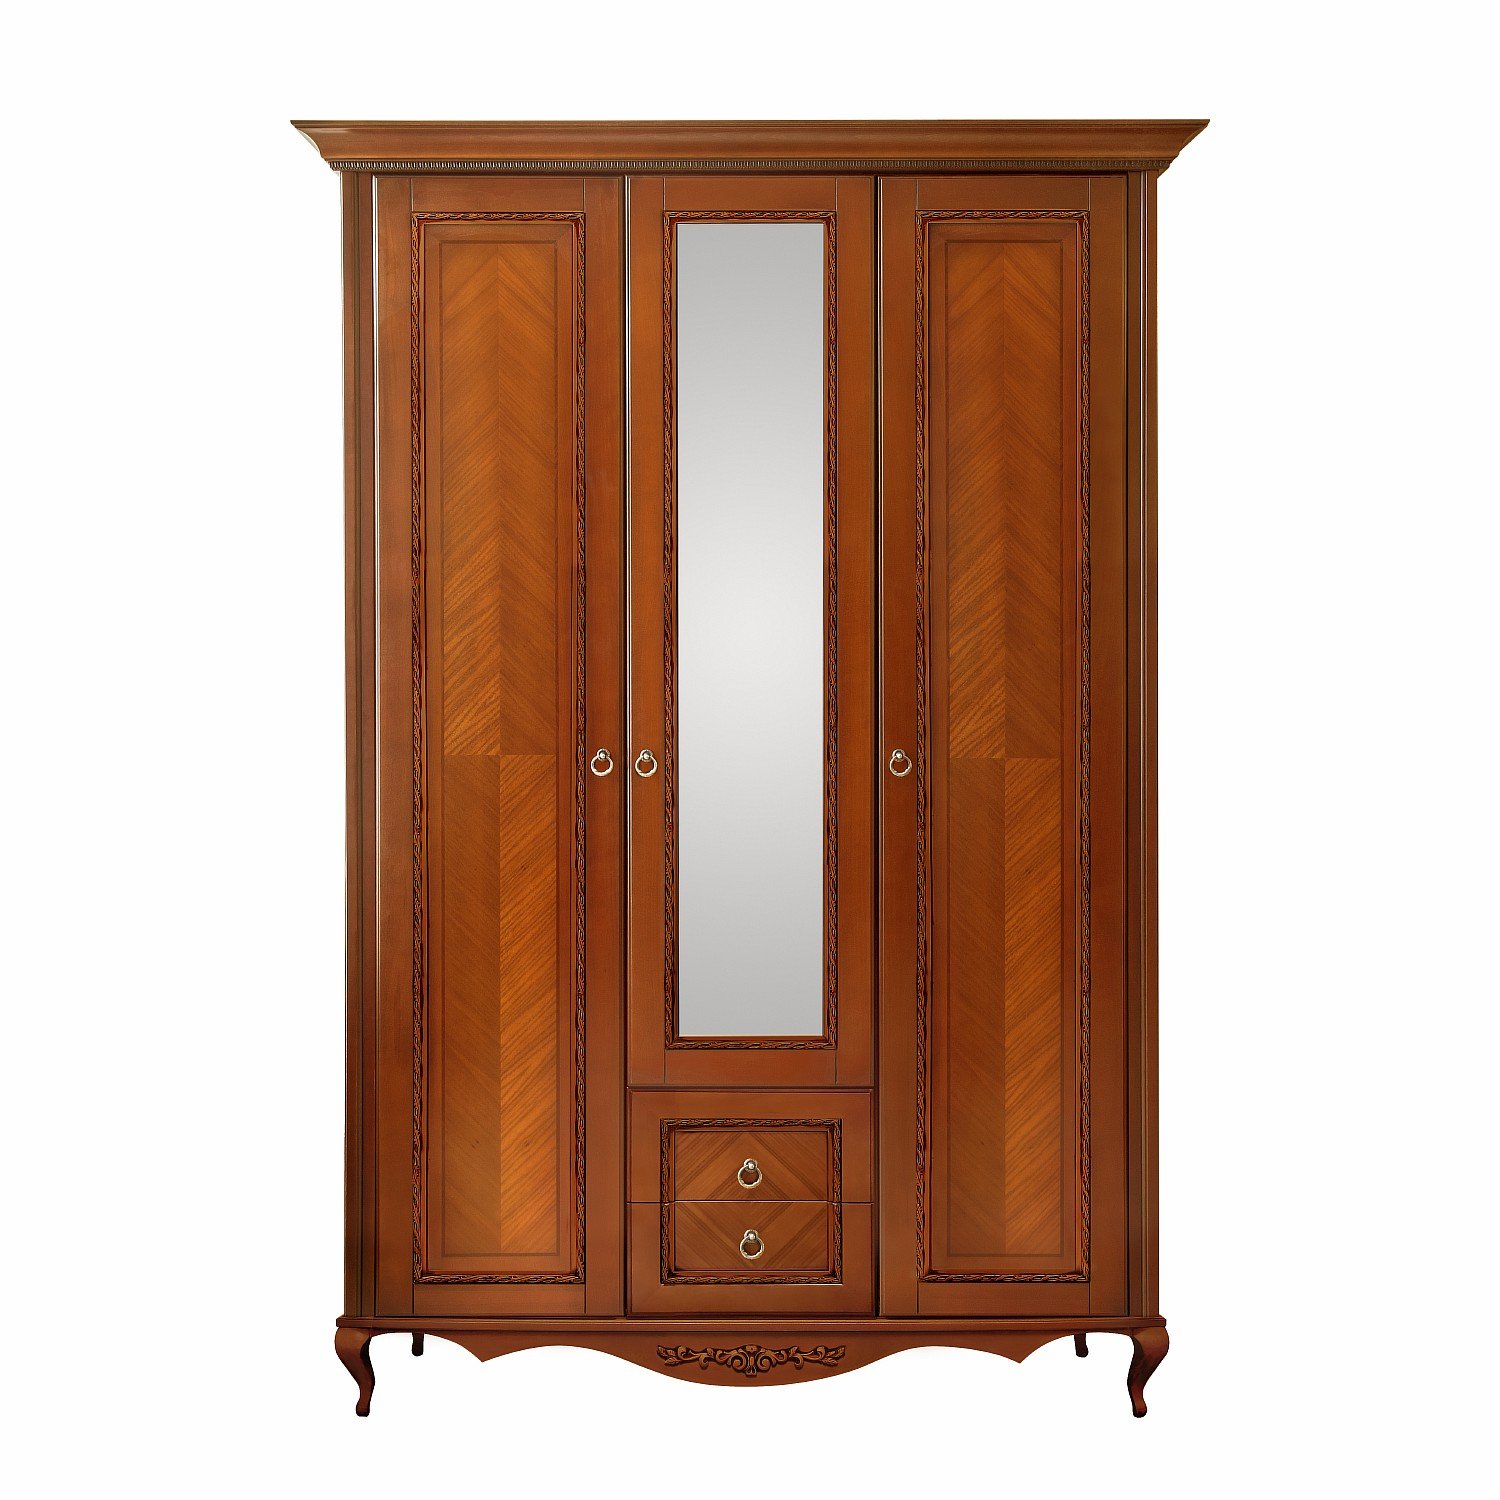 Шкаф платяной Timber Неаполь, 3-х дверный с зеркалом 159x65x227 см цвет: янтарь (T-523)T-523